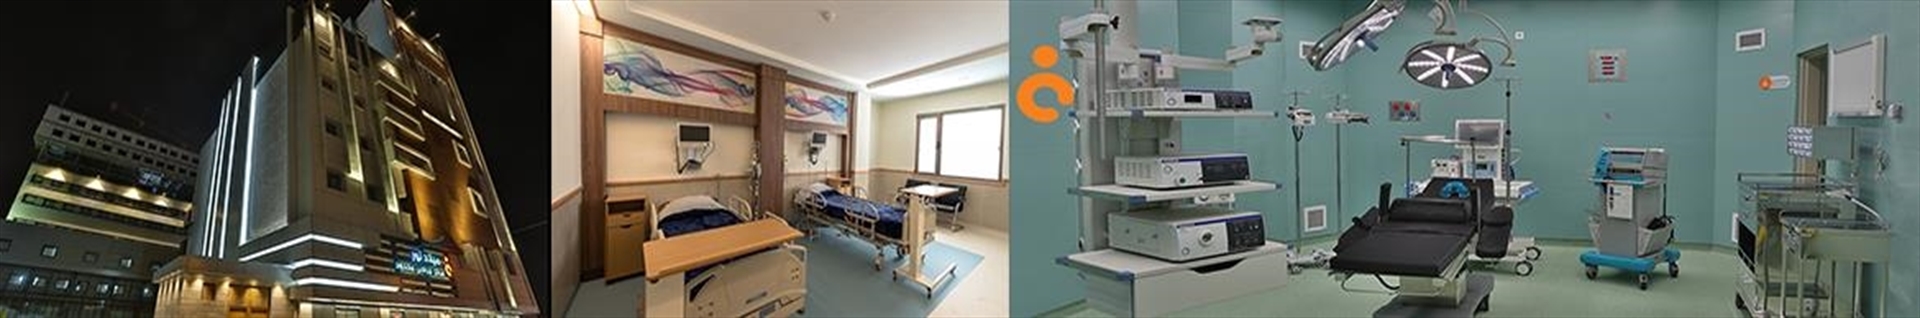 مرکز جراحی محدود بیمارستان بین المللی میلاد ارومیه